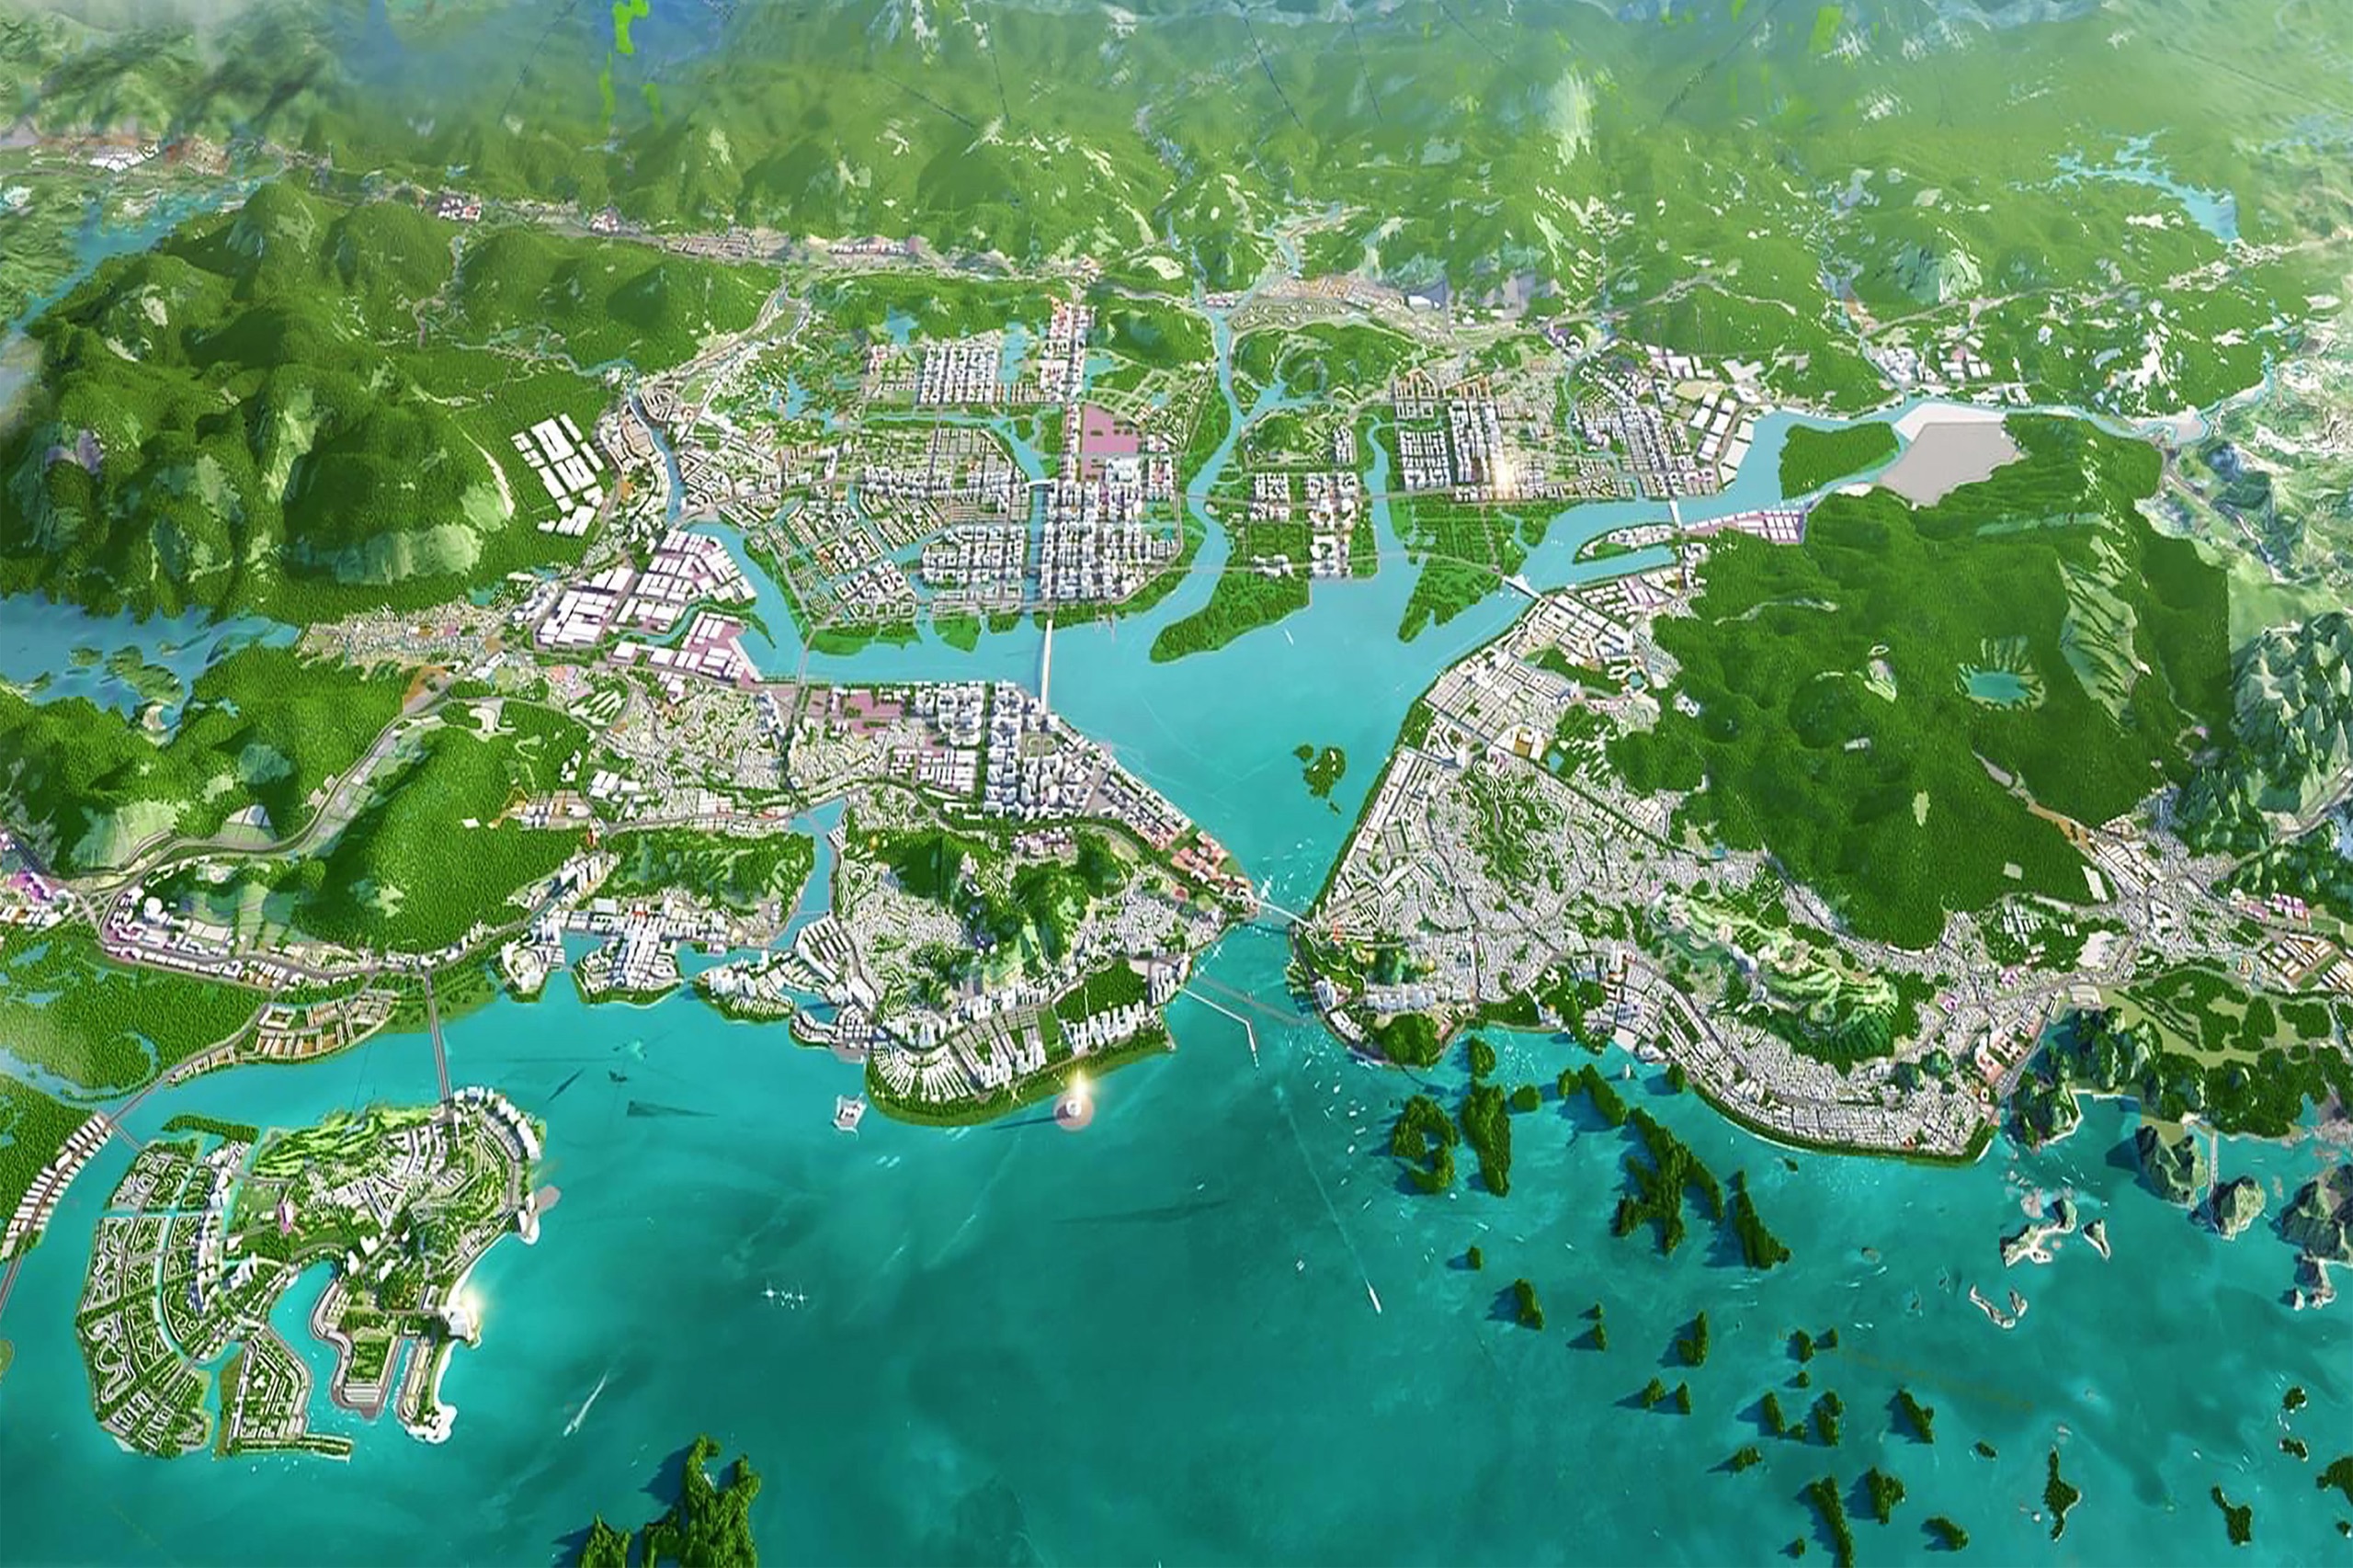 Định hướng quy hoạch phát triển đô thị trung tâm TP Hạ Long tầm nhìn 2040 - Vịnh Cửa Lục làm trung tâm kết nối.